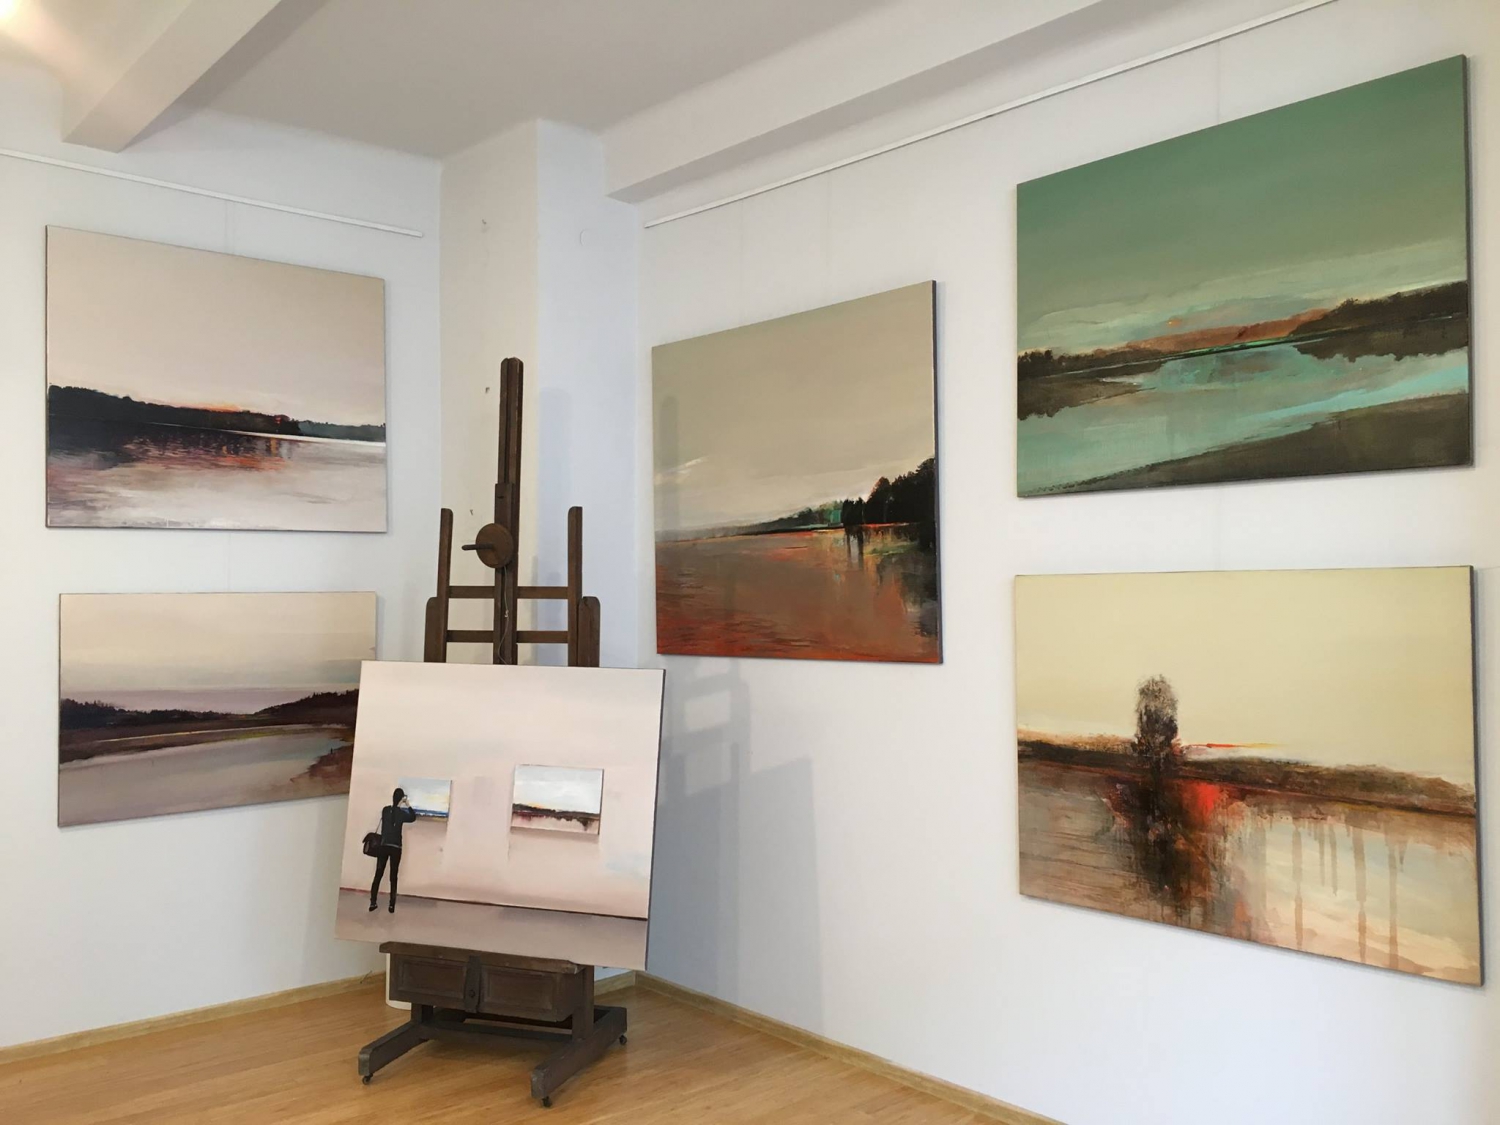 Zofia Weiss Gallery